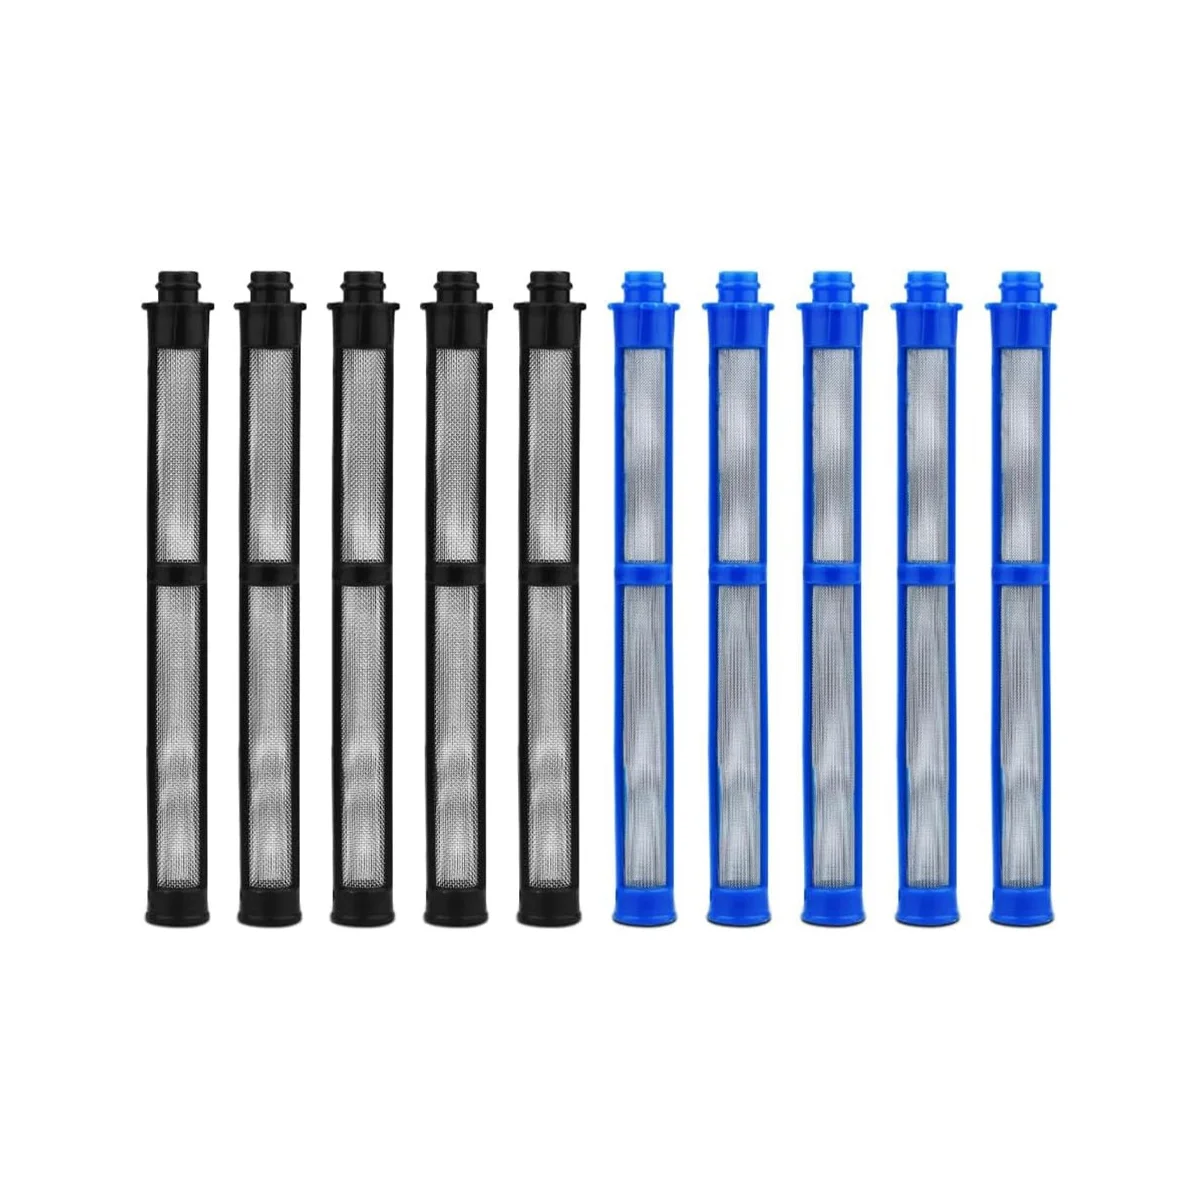 

Безвоздушные фильтры SprayGun-287033 5 шт. 100 сетчатый латекс и 287032 5 шт. 60 сетчатый латекс для большинства напорных безвоздушных распылителей